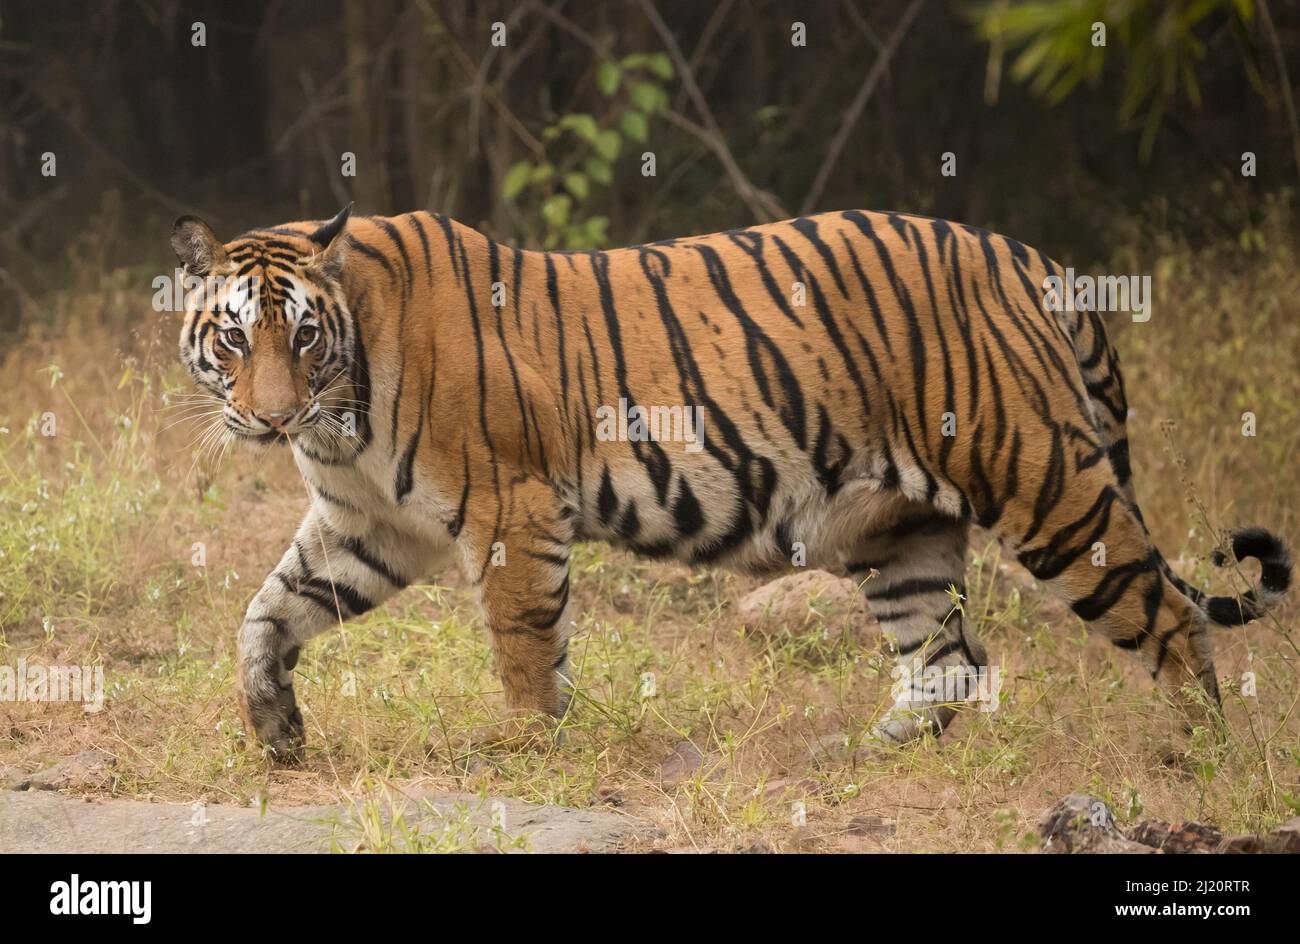 Bengalischer Tiger (Panthera tigris tigris) Profil beim Gehen, auf der Suche nach Beute. Bandhavgarh-Nationalpark, Indien, Dezember. Stockfoto